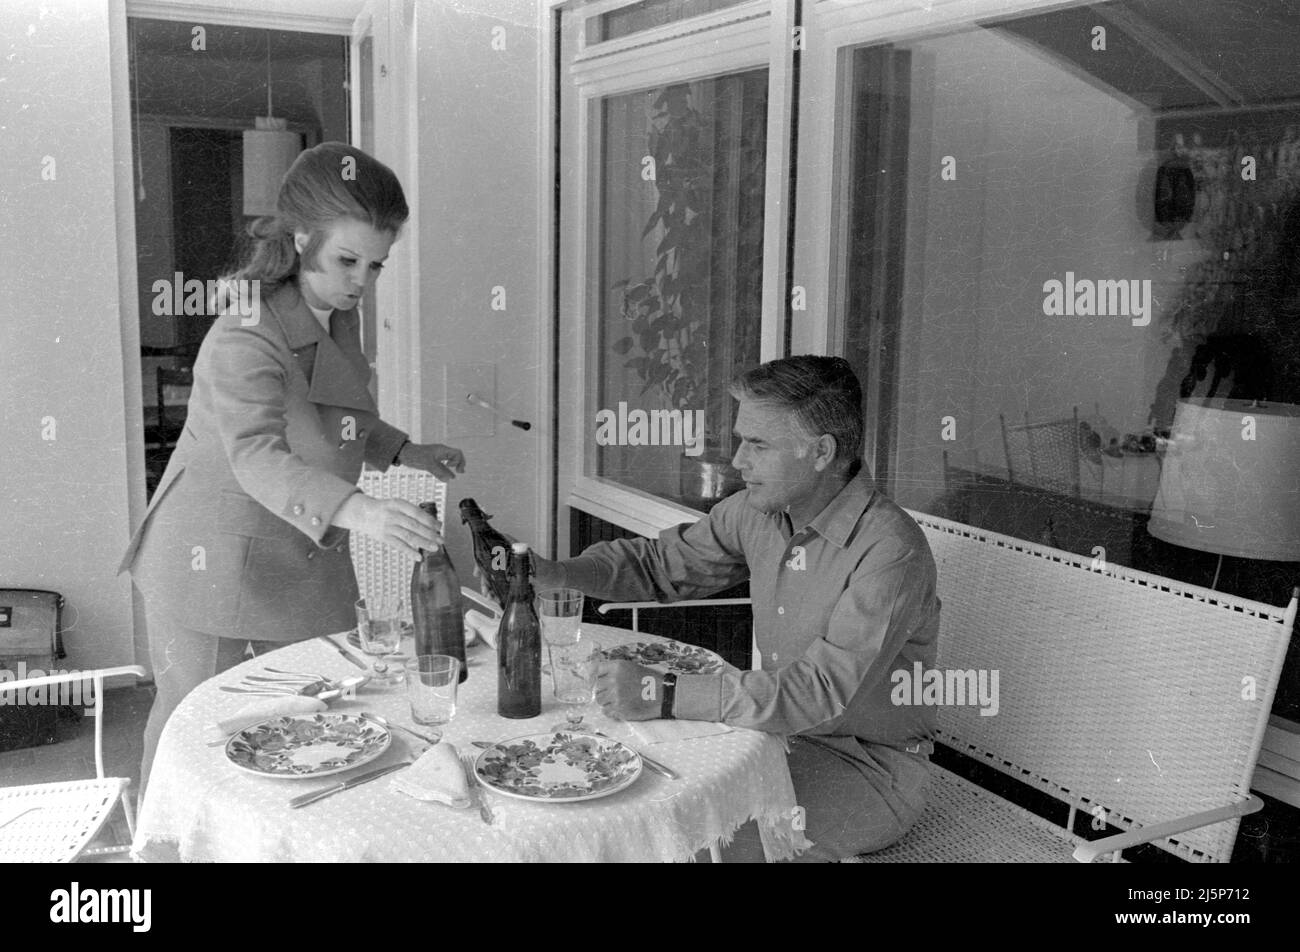 Famille Fuchsberger: Joachim Fuchsberger avec sa femme Gundula Fuchsberger dans leur maison à Grünwald près de Munich. [traduction automatique] Banque D'Images